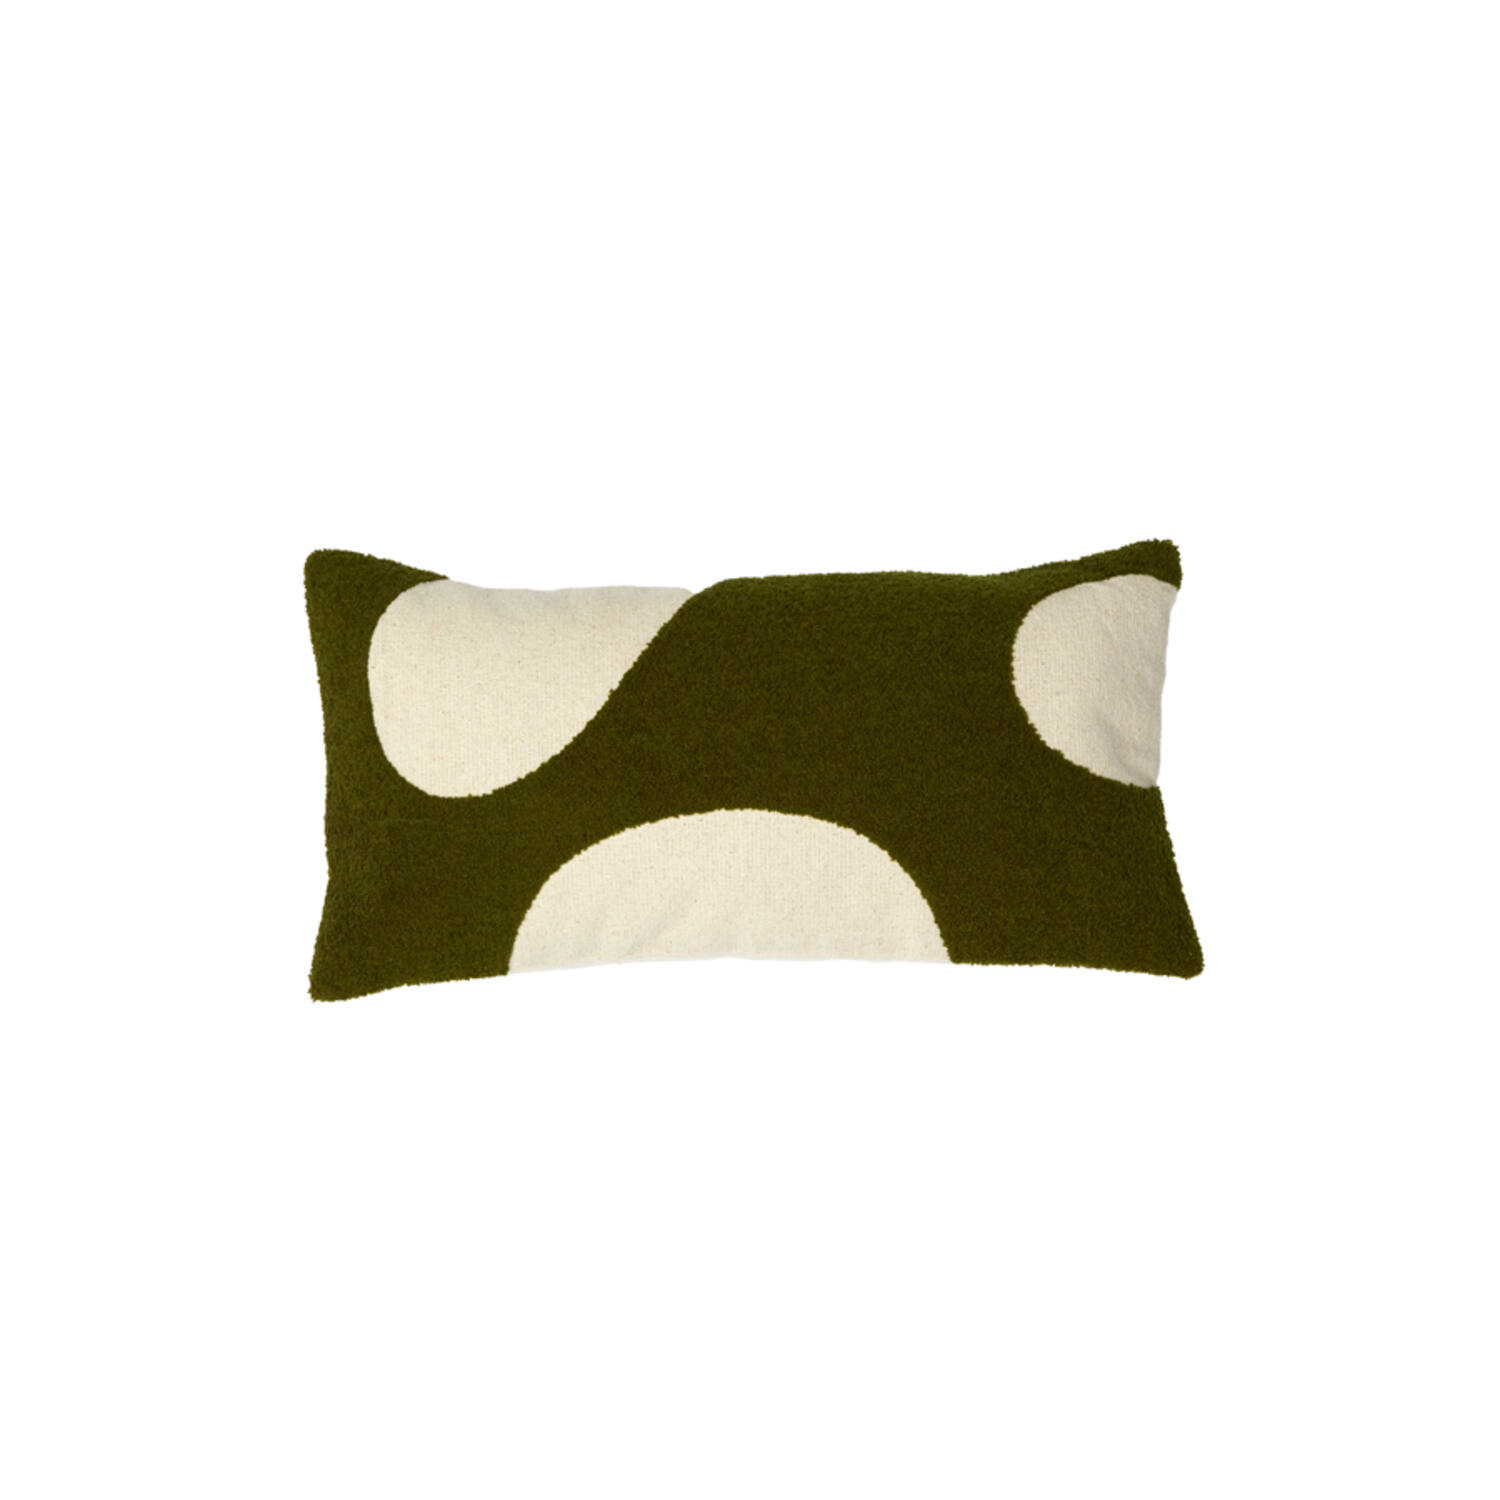 Cushion 60x30 cm CELLIO dark green+beige